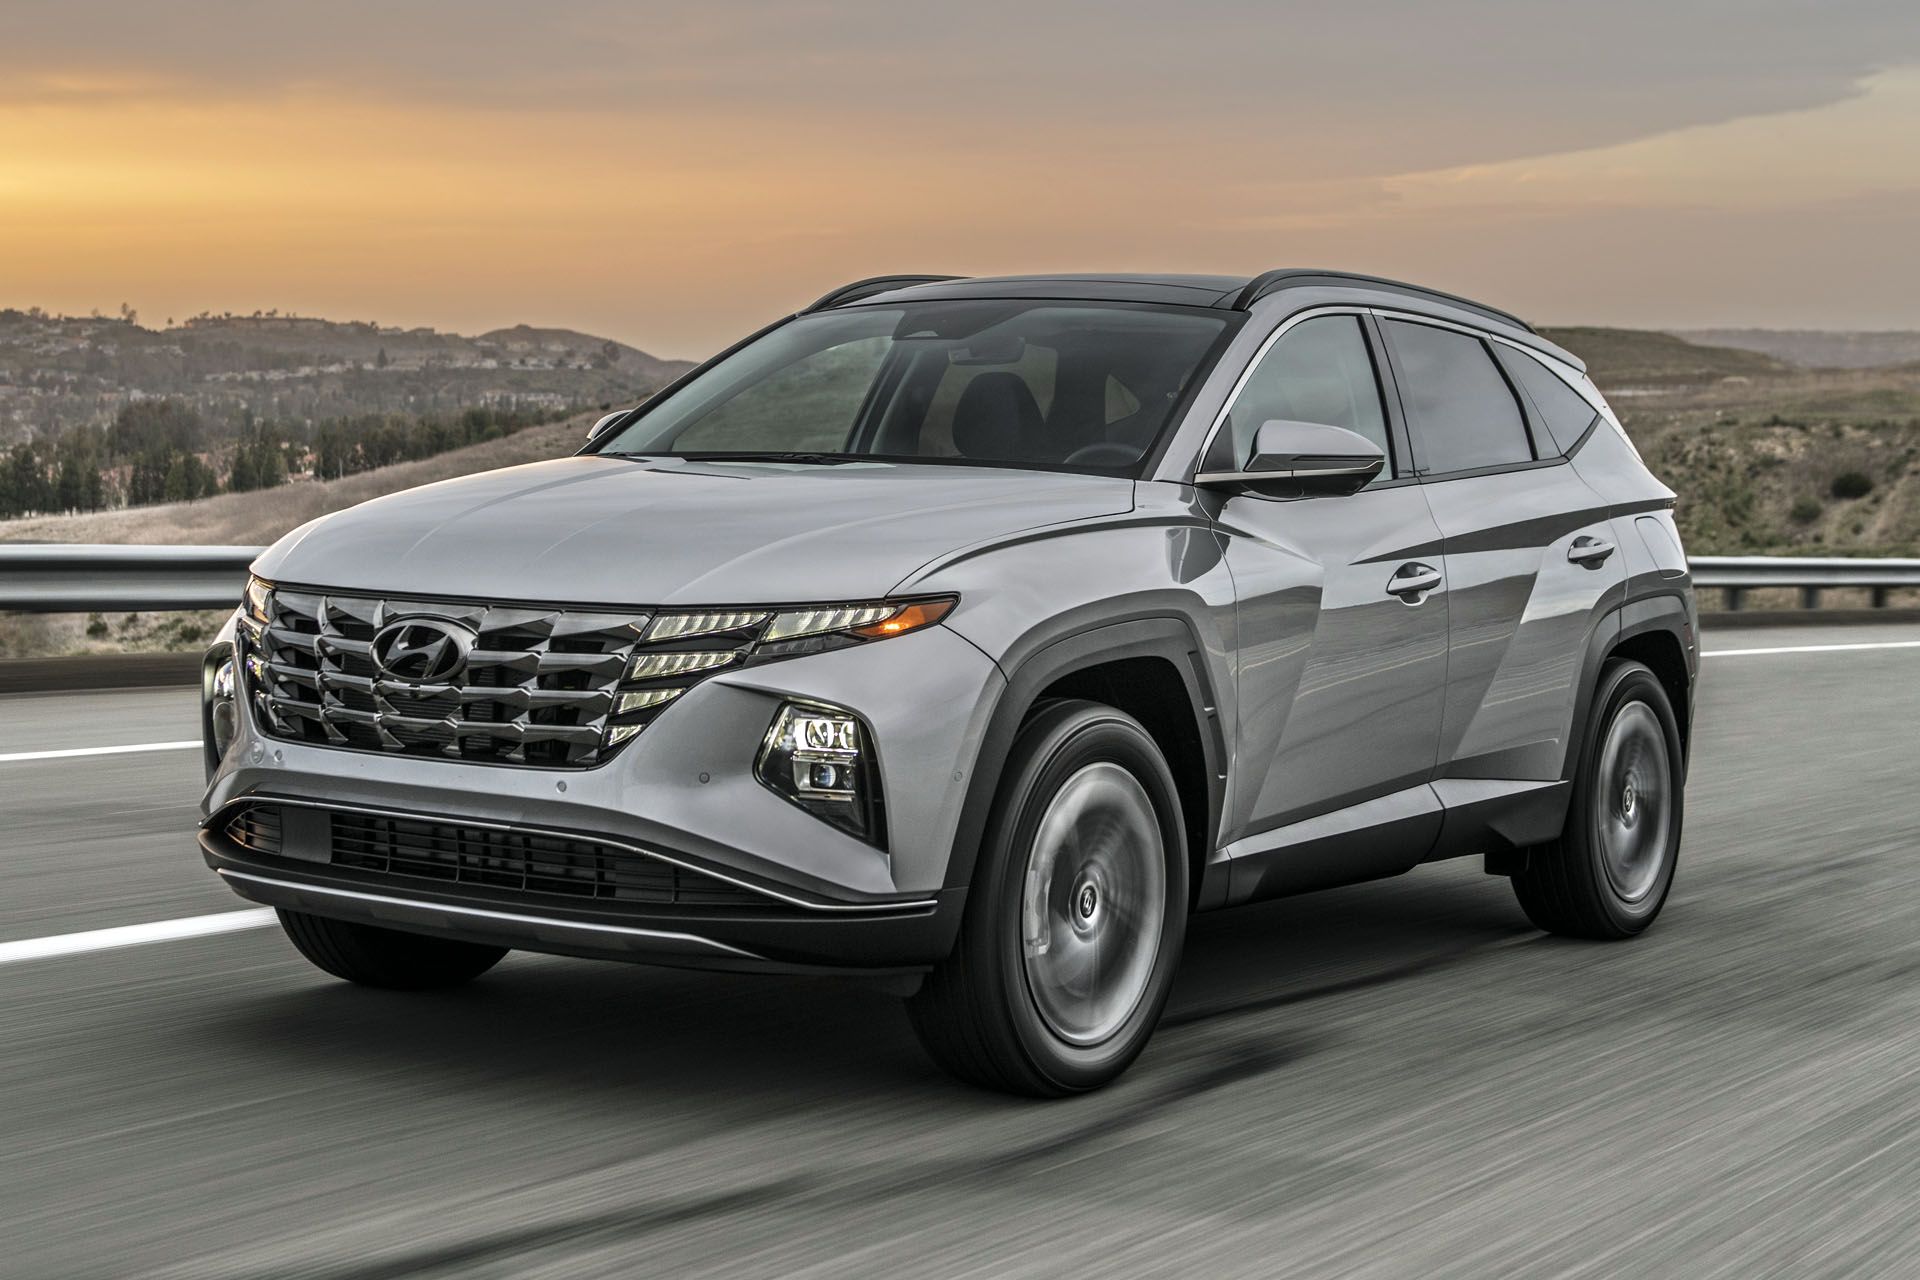 2023 Hyundai Tucson, Features & Price in Canada